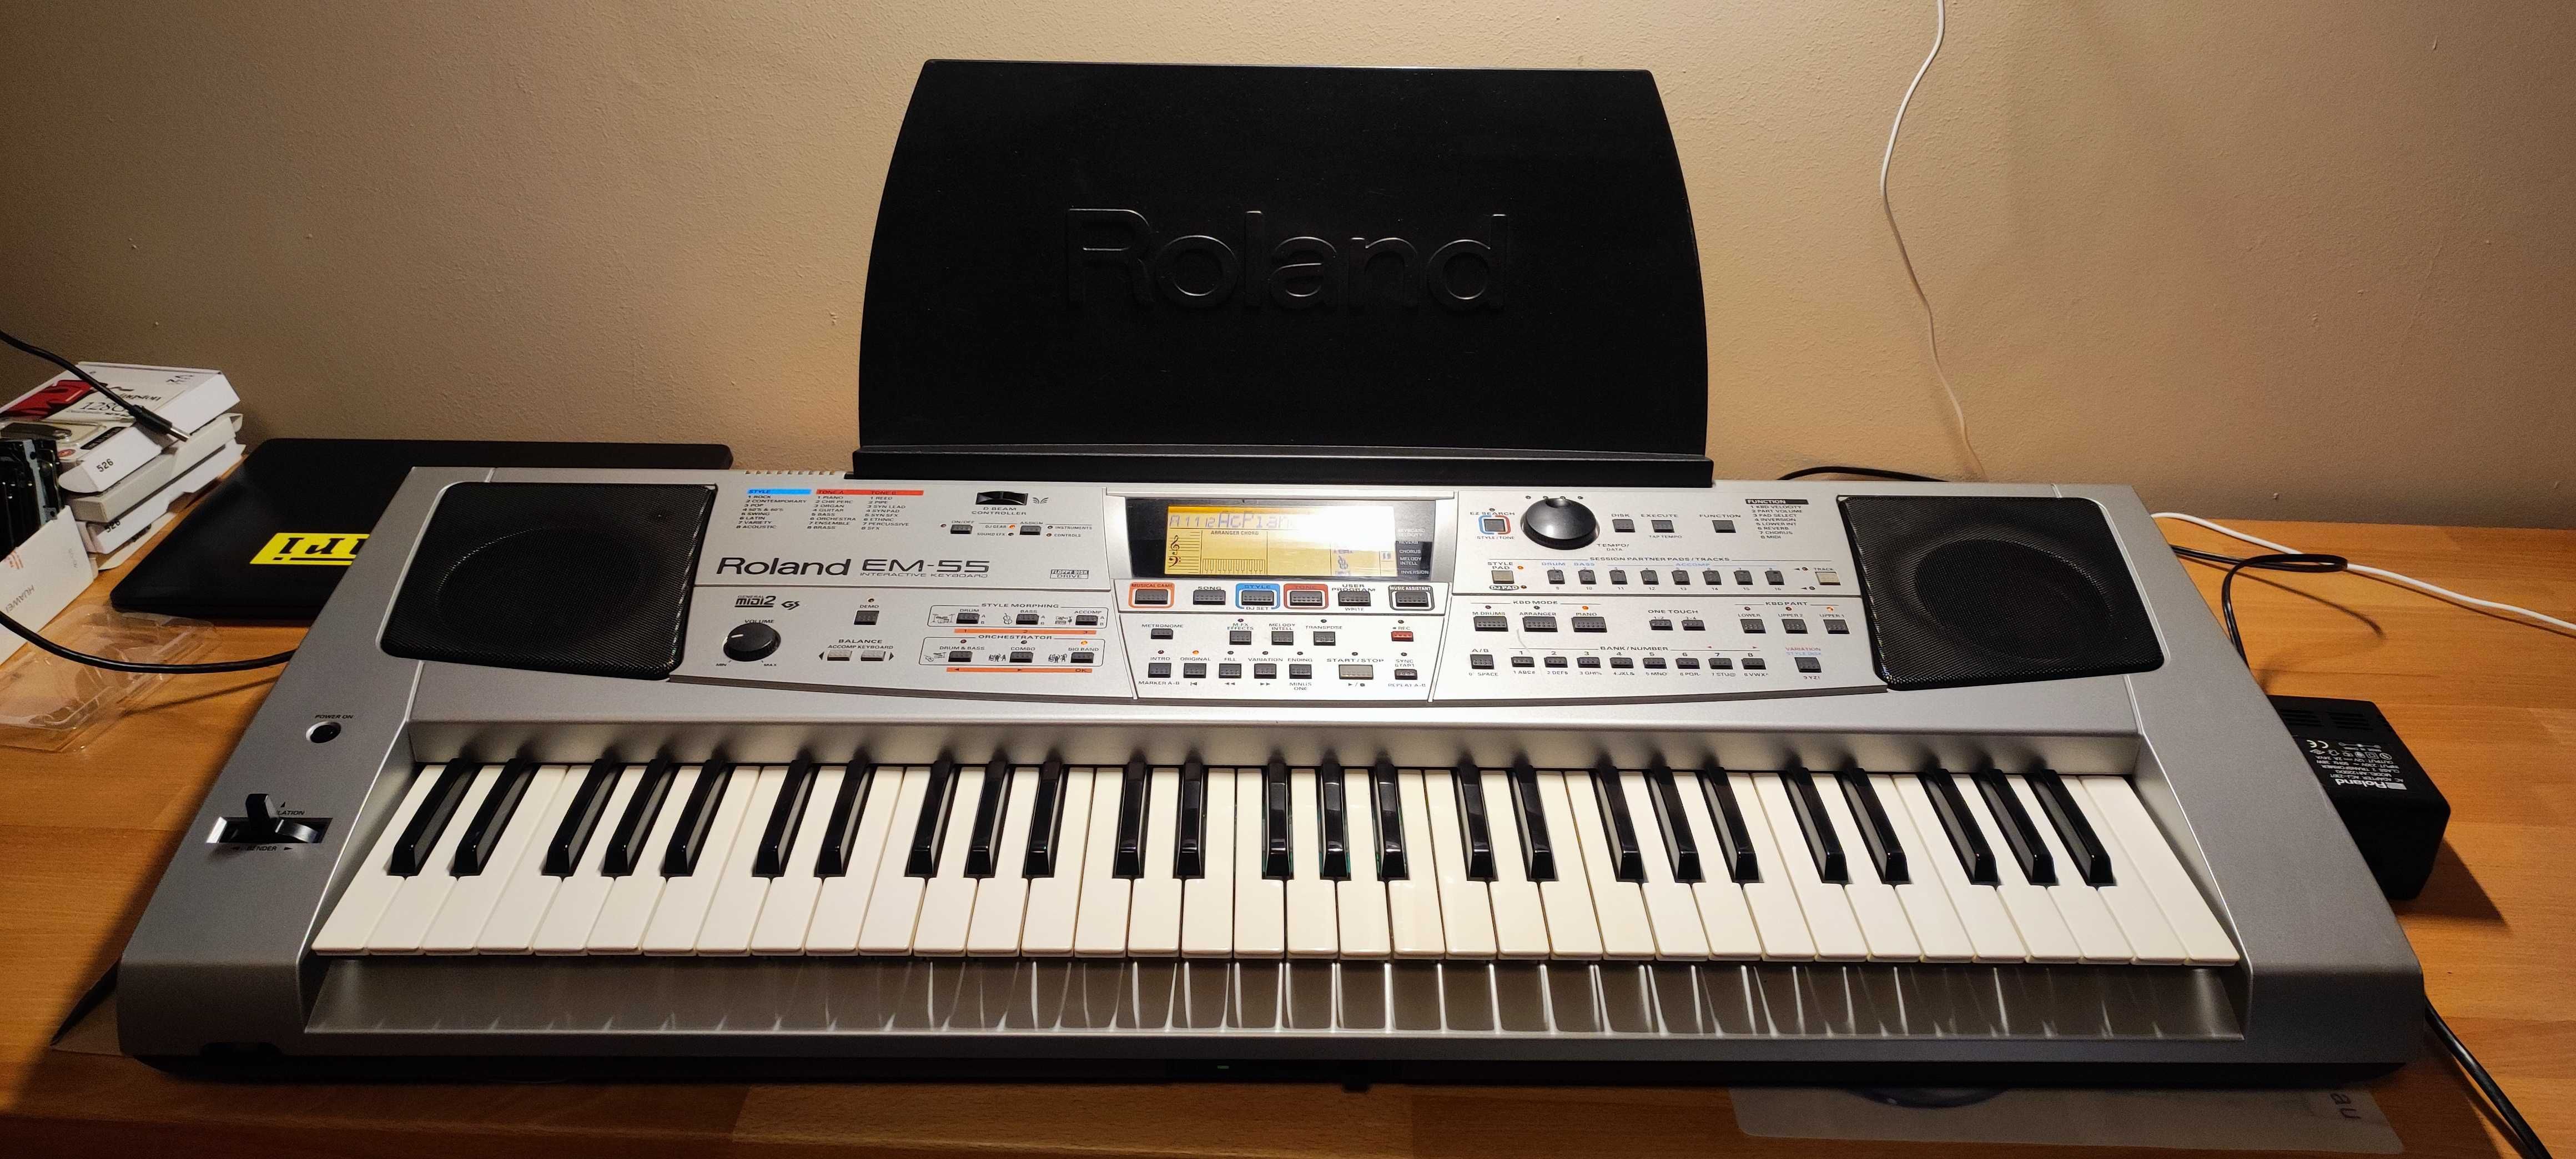 keyboard ROLAND EM-55 (3 poziomy dynamiki klawiszy)